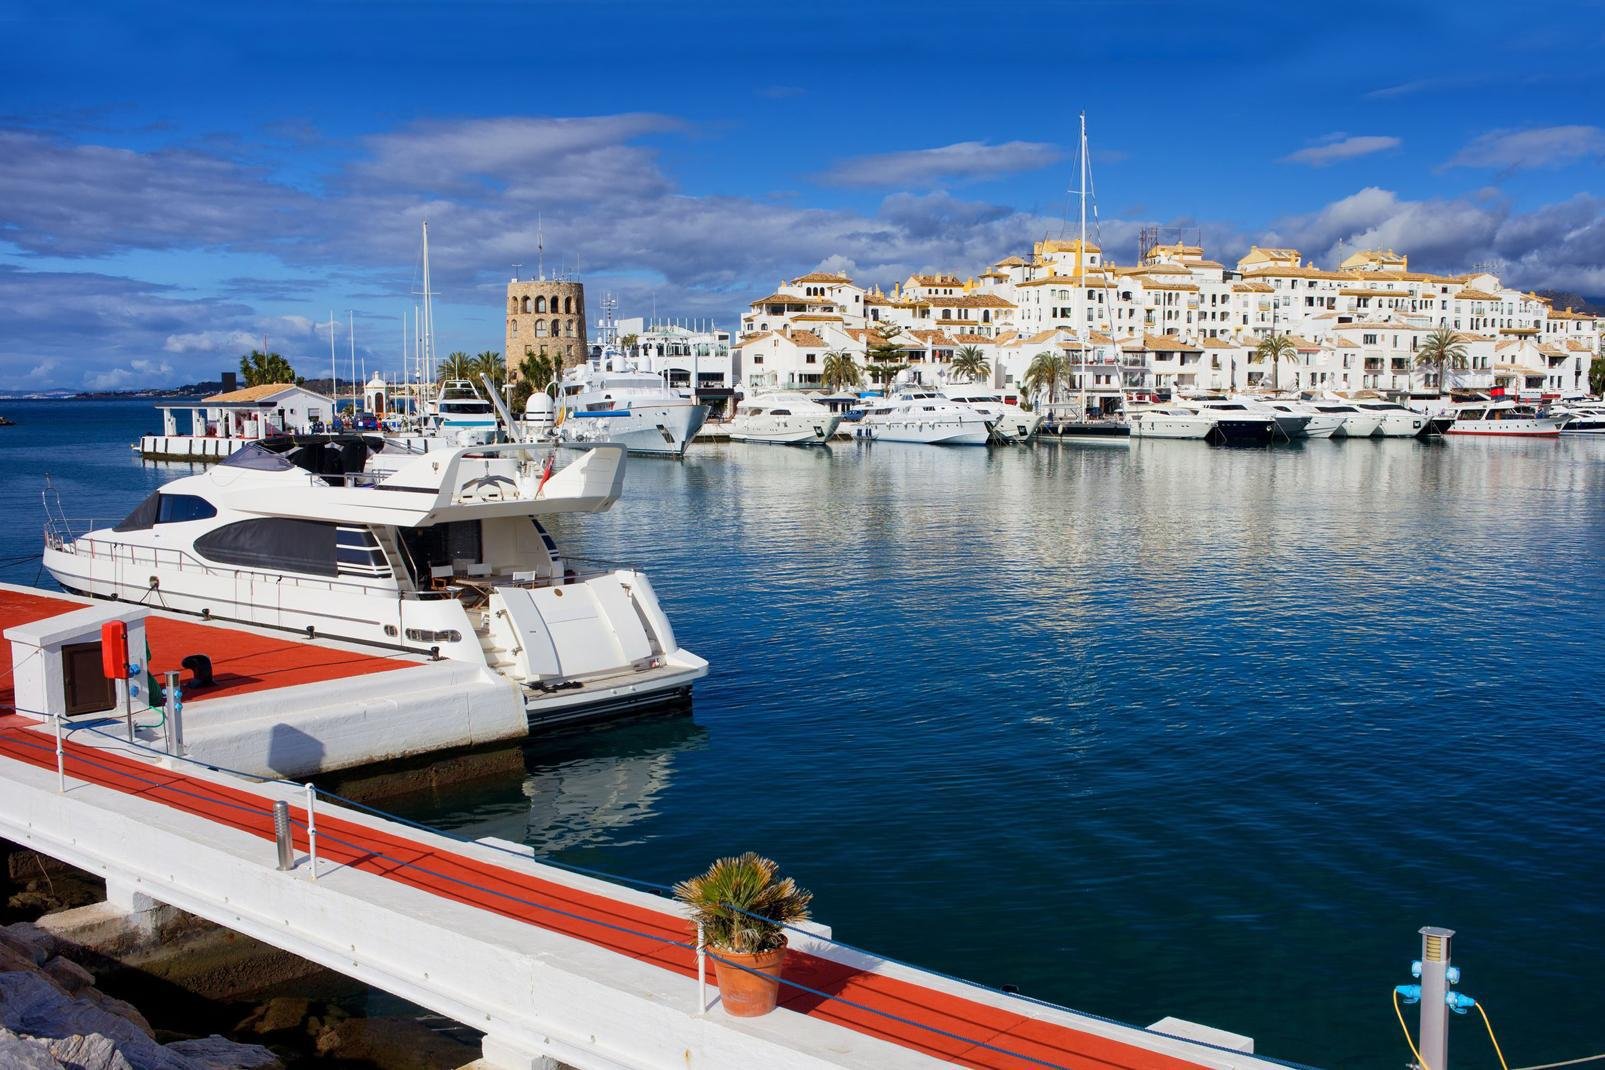  A 6 km de Marbella, Puerto Banus est un port de plaisance où se concentrent nombre de célébrités locales ainsi que presque mille voiliers et yachts, tous plus luxueux les uns que les autres. On y trouve une multitude de restaurants, de bars, d'antiquaires et de boutiques de luxe, souvent ouverts toute la nuit en saison. C'est ici que se montrent les plus fortunés, longeant ostensiblement la route ...